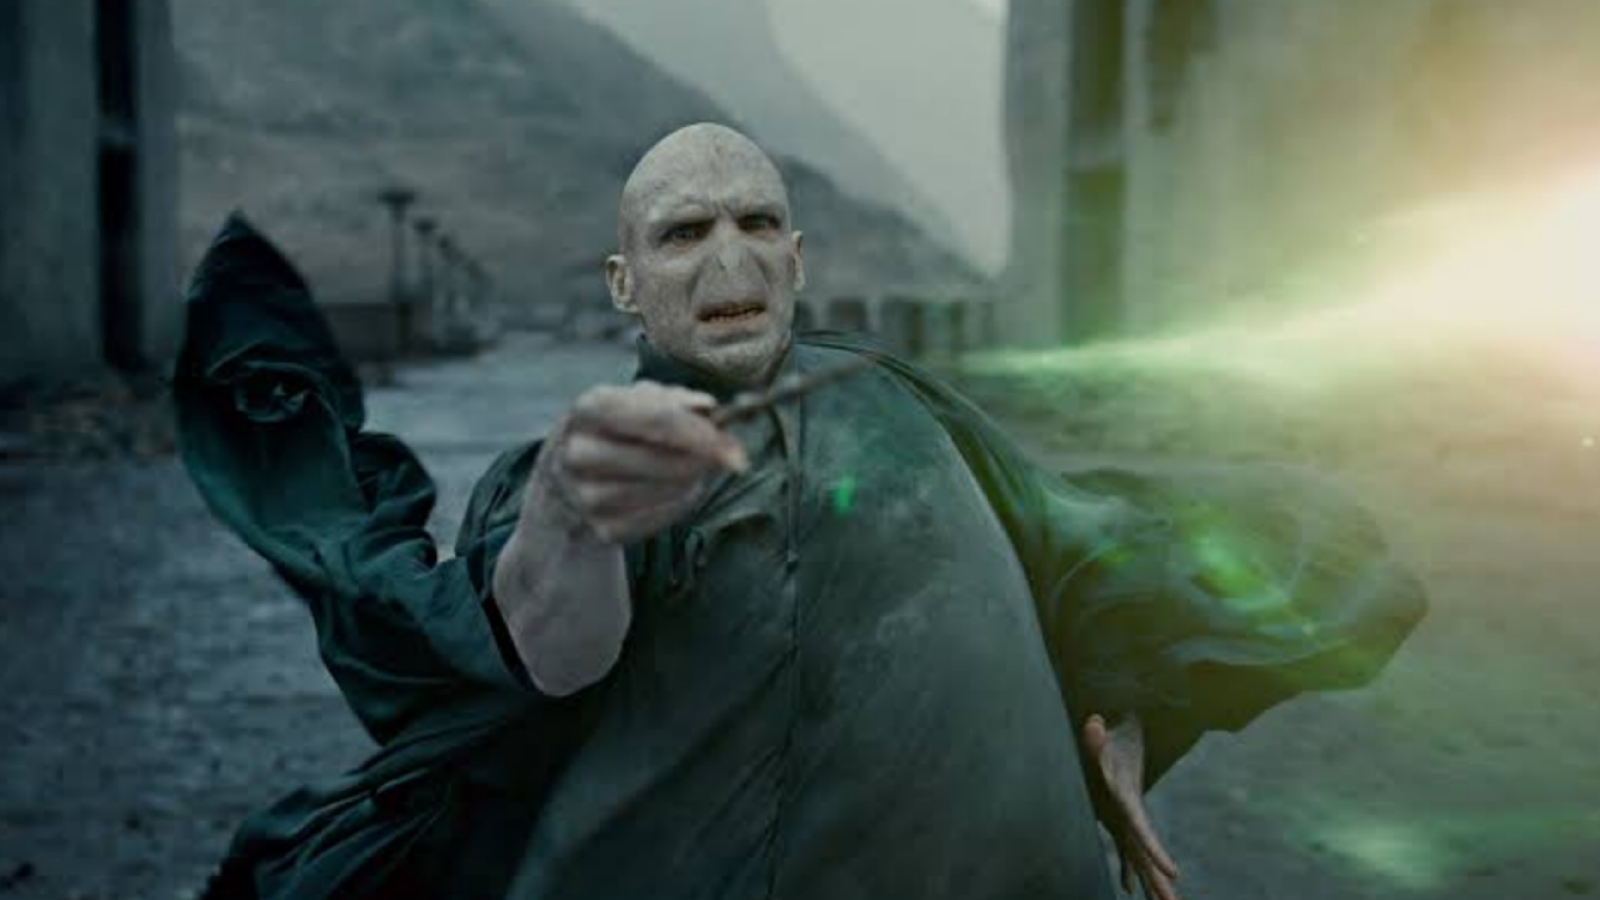 Você sabia que Voldemort é o único bruxo capaz de voo sem suporte? #ha